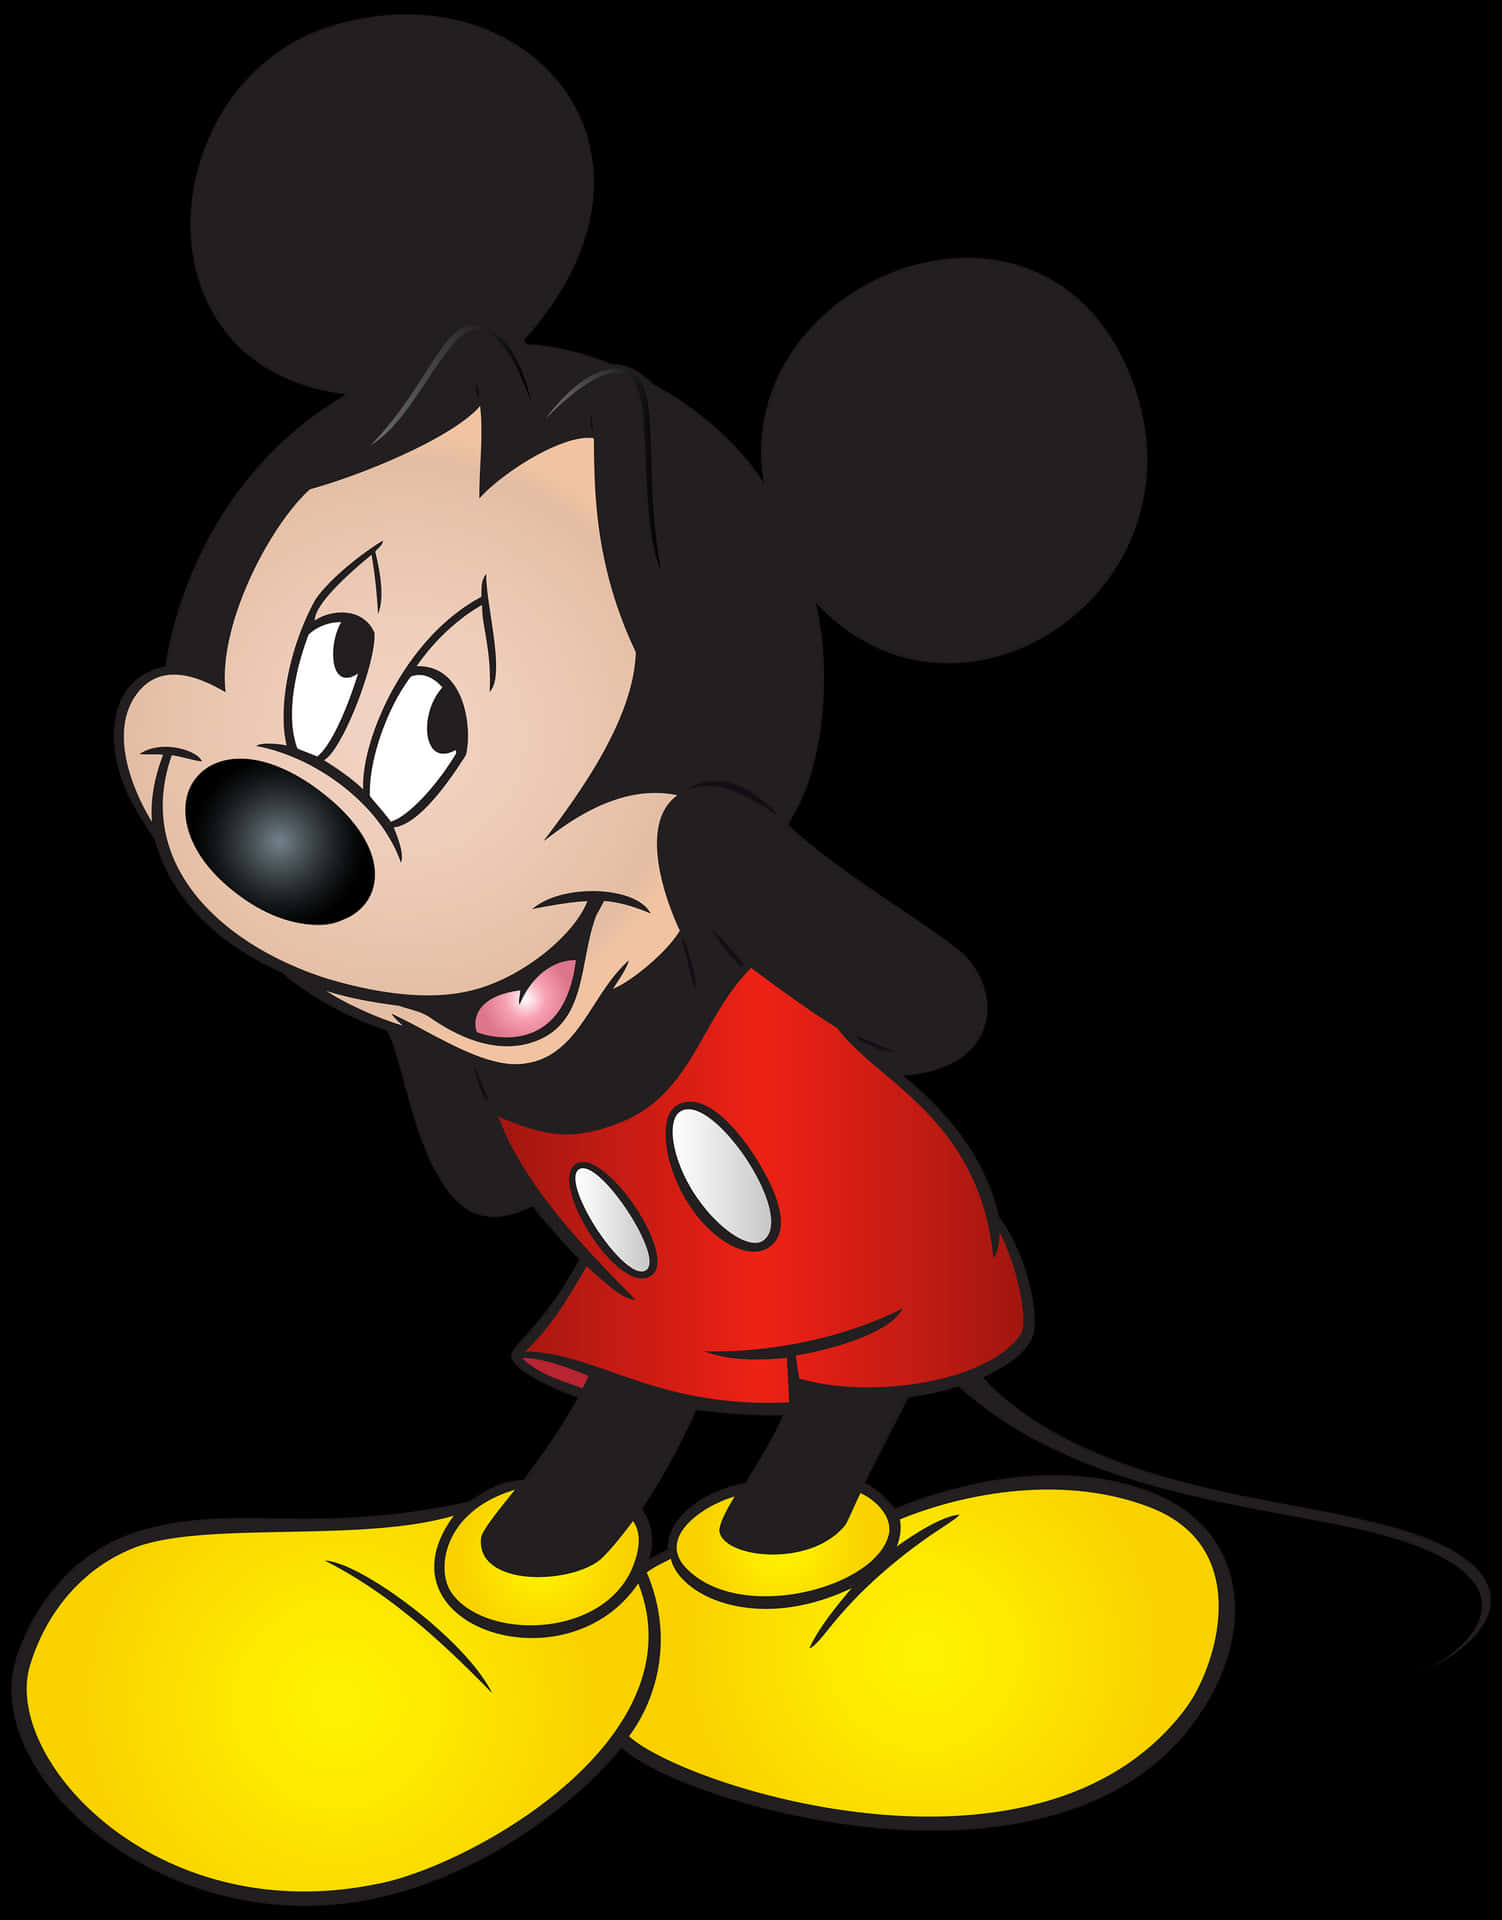 Få Mickey Musens ikoniske ører og gå aldrig glip af sjov! Wallpaper